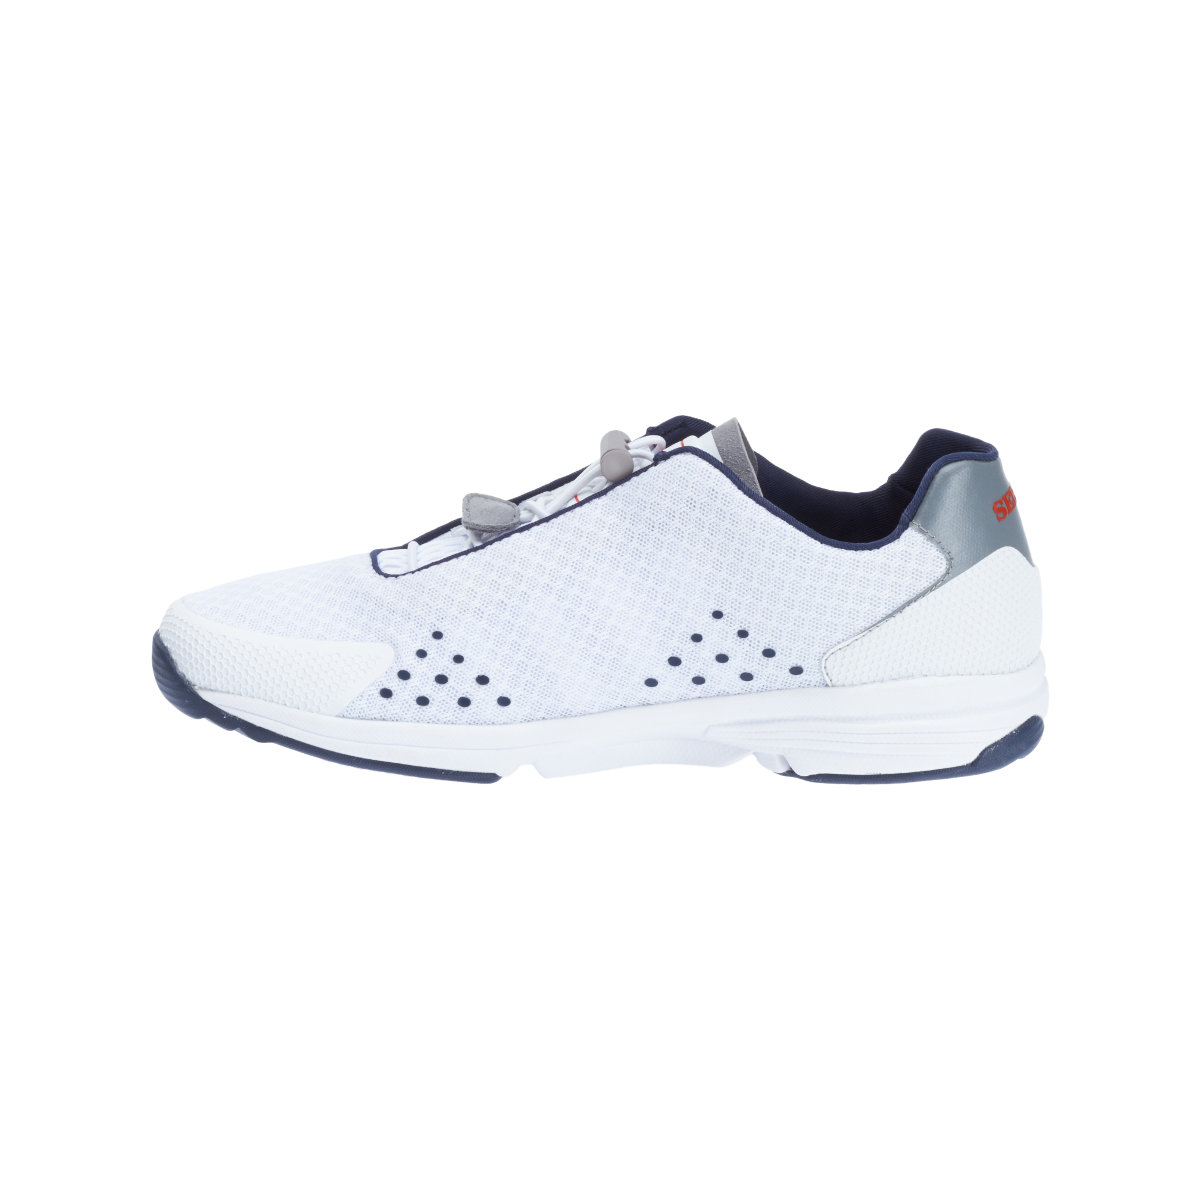 Sebago Cyphon Sea Sport chaussures à voile femme blanche, taille EU 39 (US 8,5)